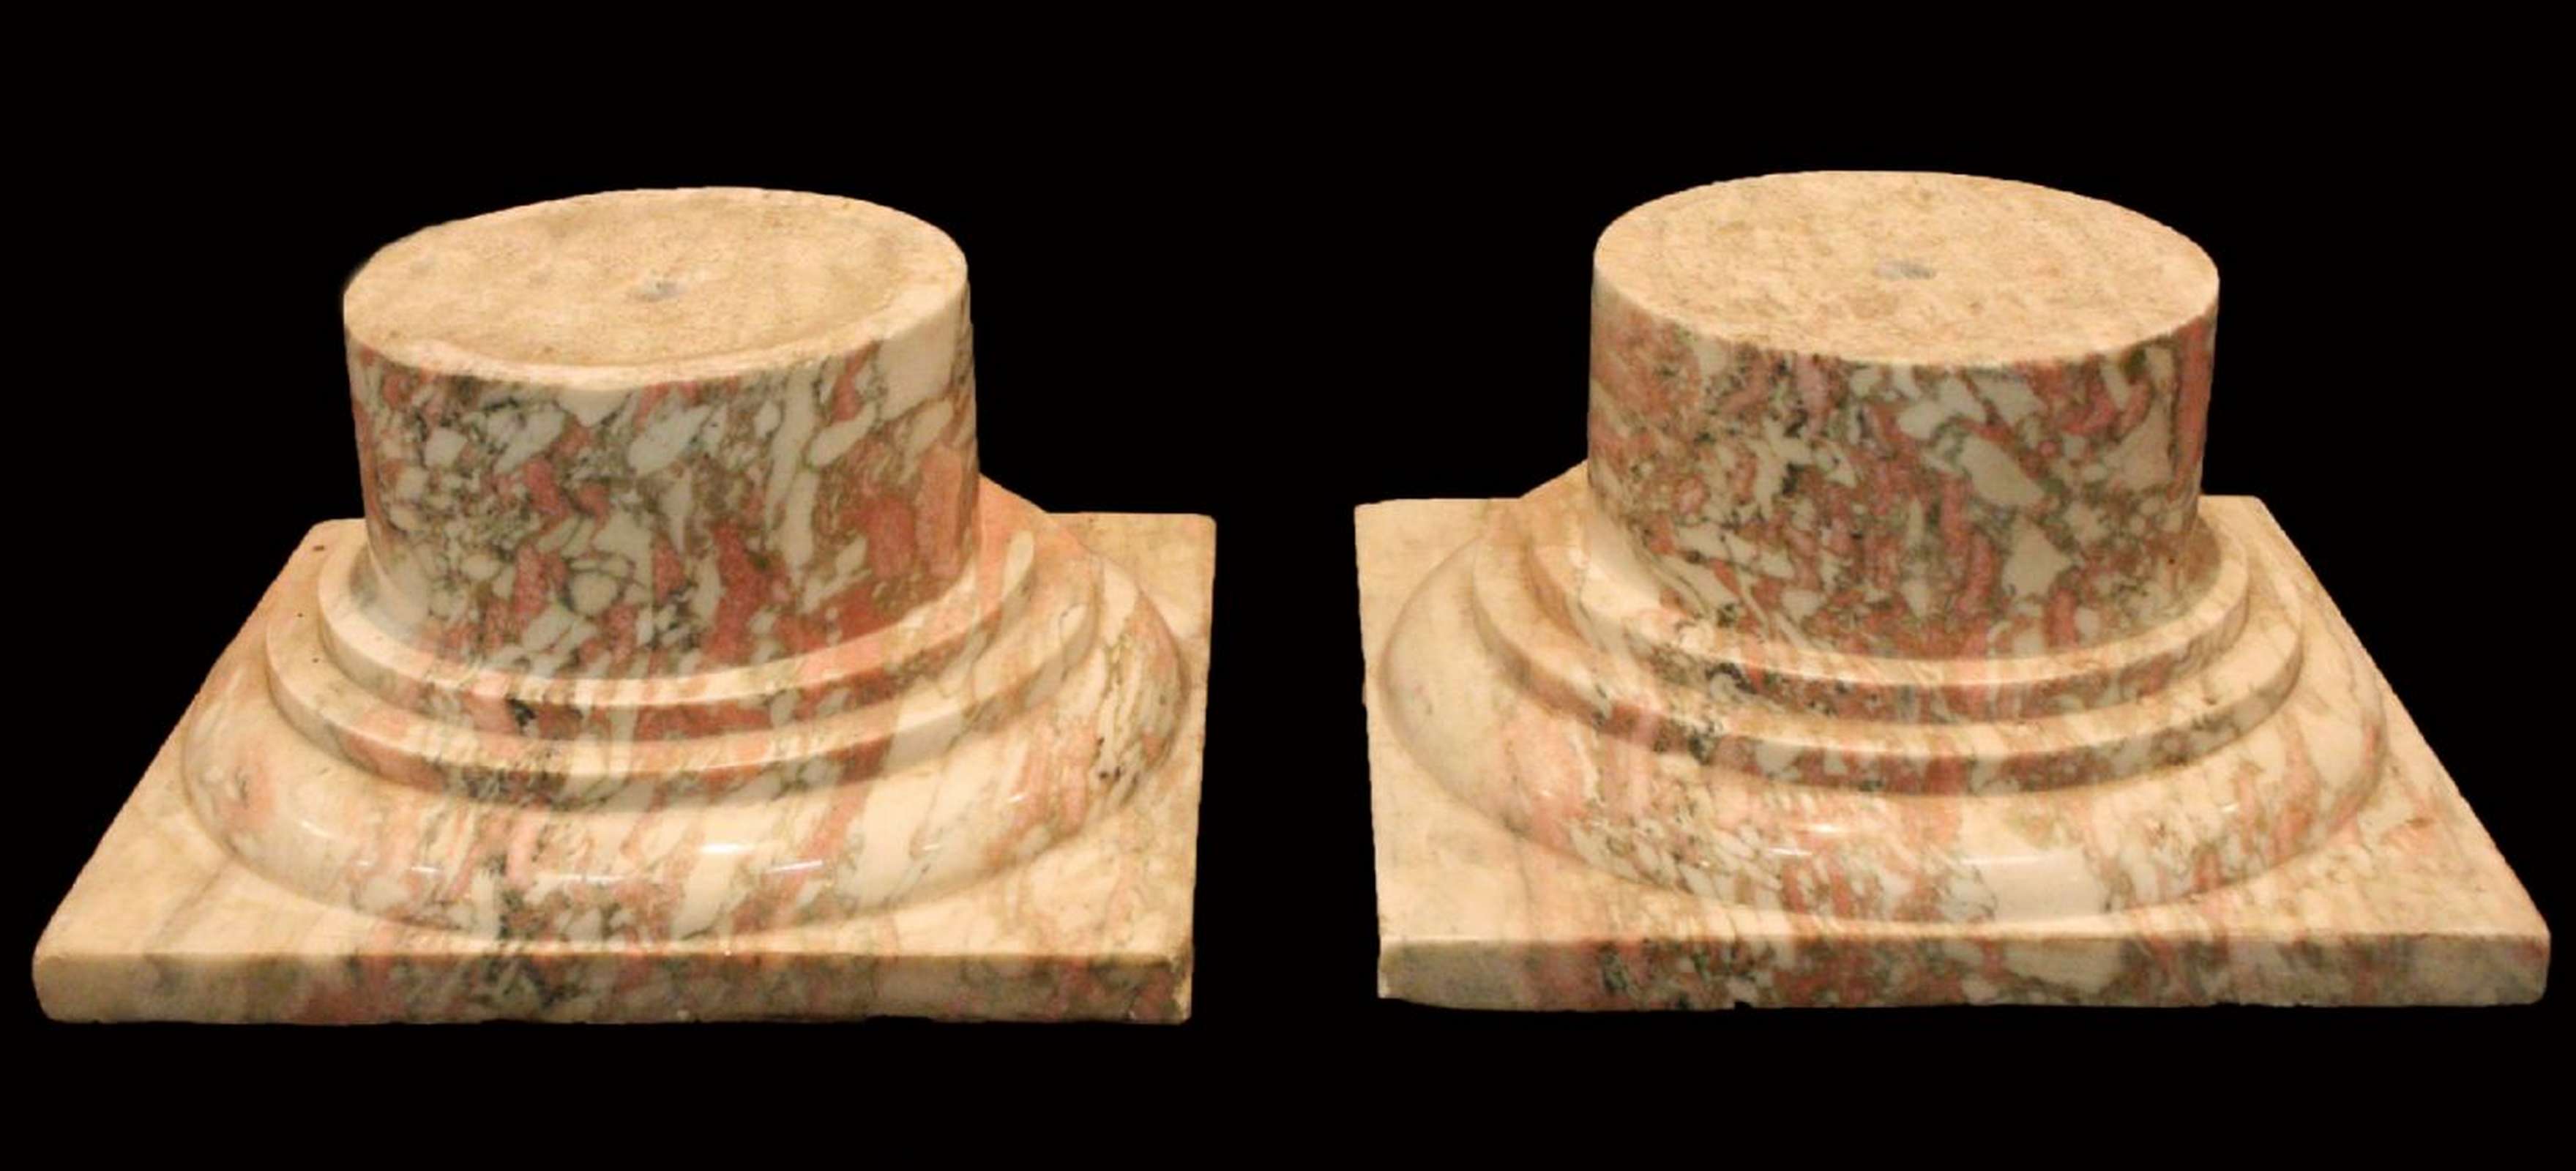 Coppia di capitelli in marmo. Epoca 1800. - Capitelli basi per colonne - Architettura - Prodotti - Antichità Fiorillo